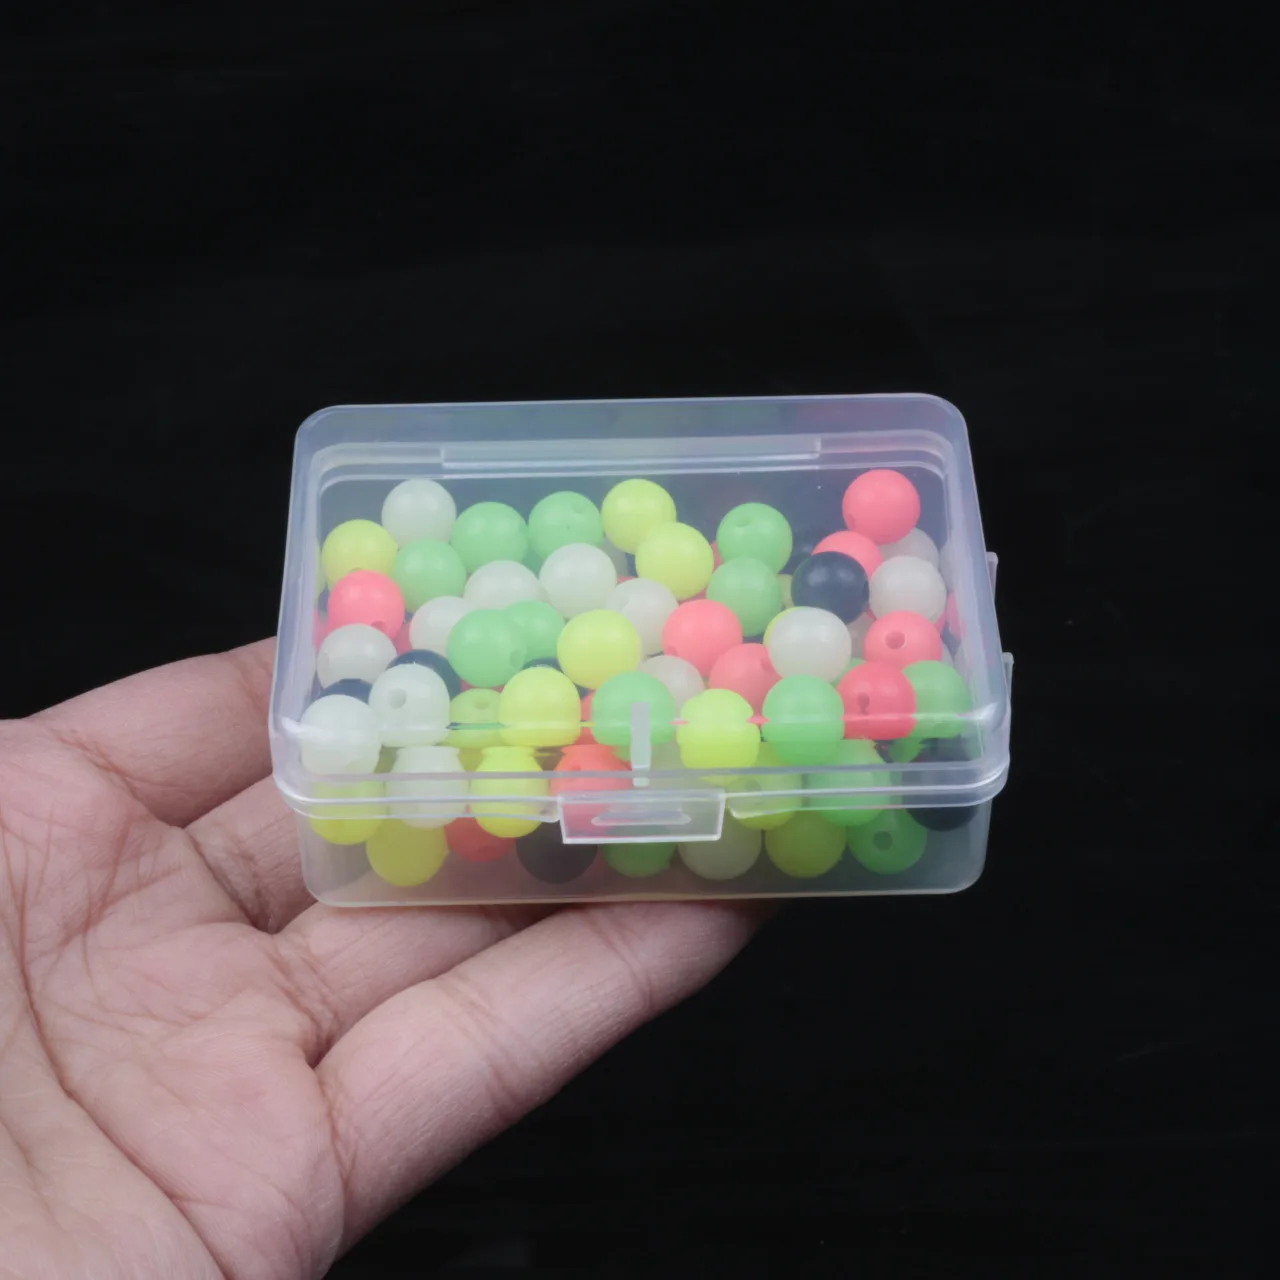 100 шт./лот, рыболовные плавающие бусины 3-8 мм, разноцветные светящиеся шарики, космические бобы, круглые плавающие шарики, приманка, пластиковая приманка